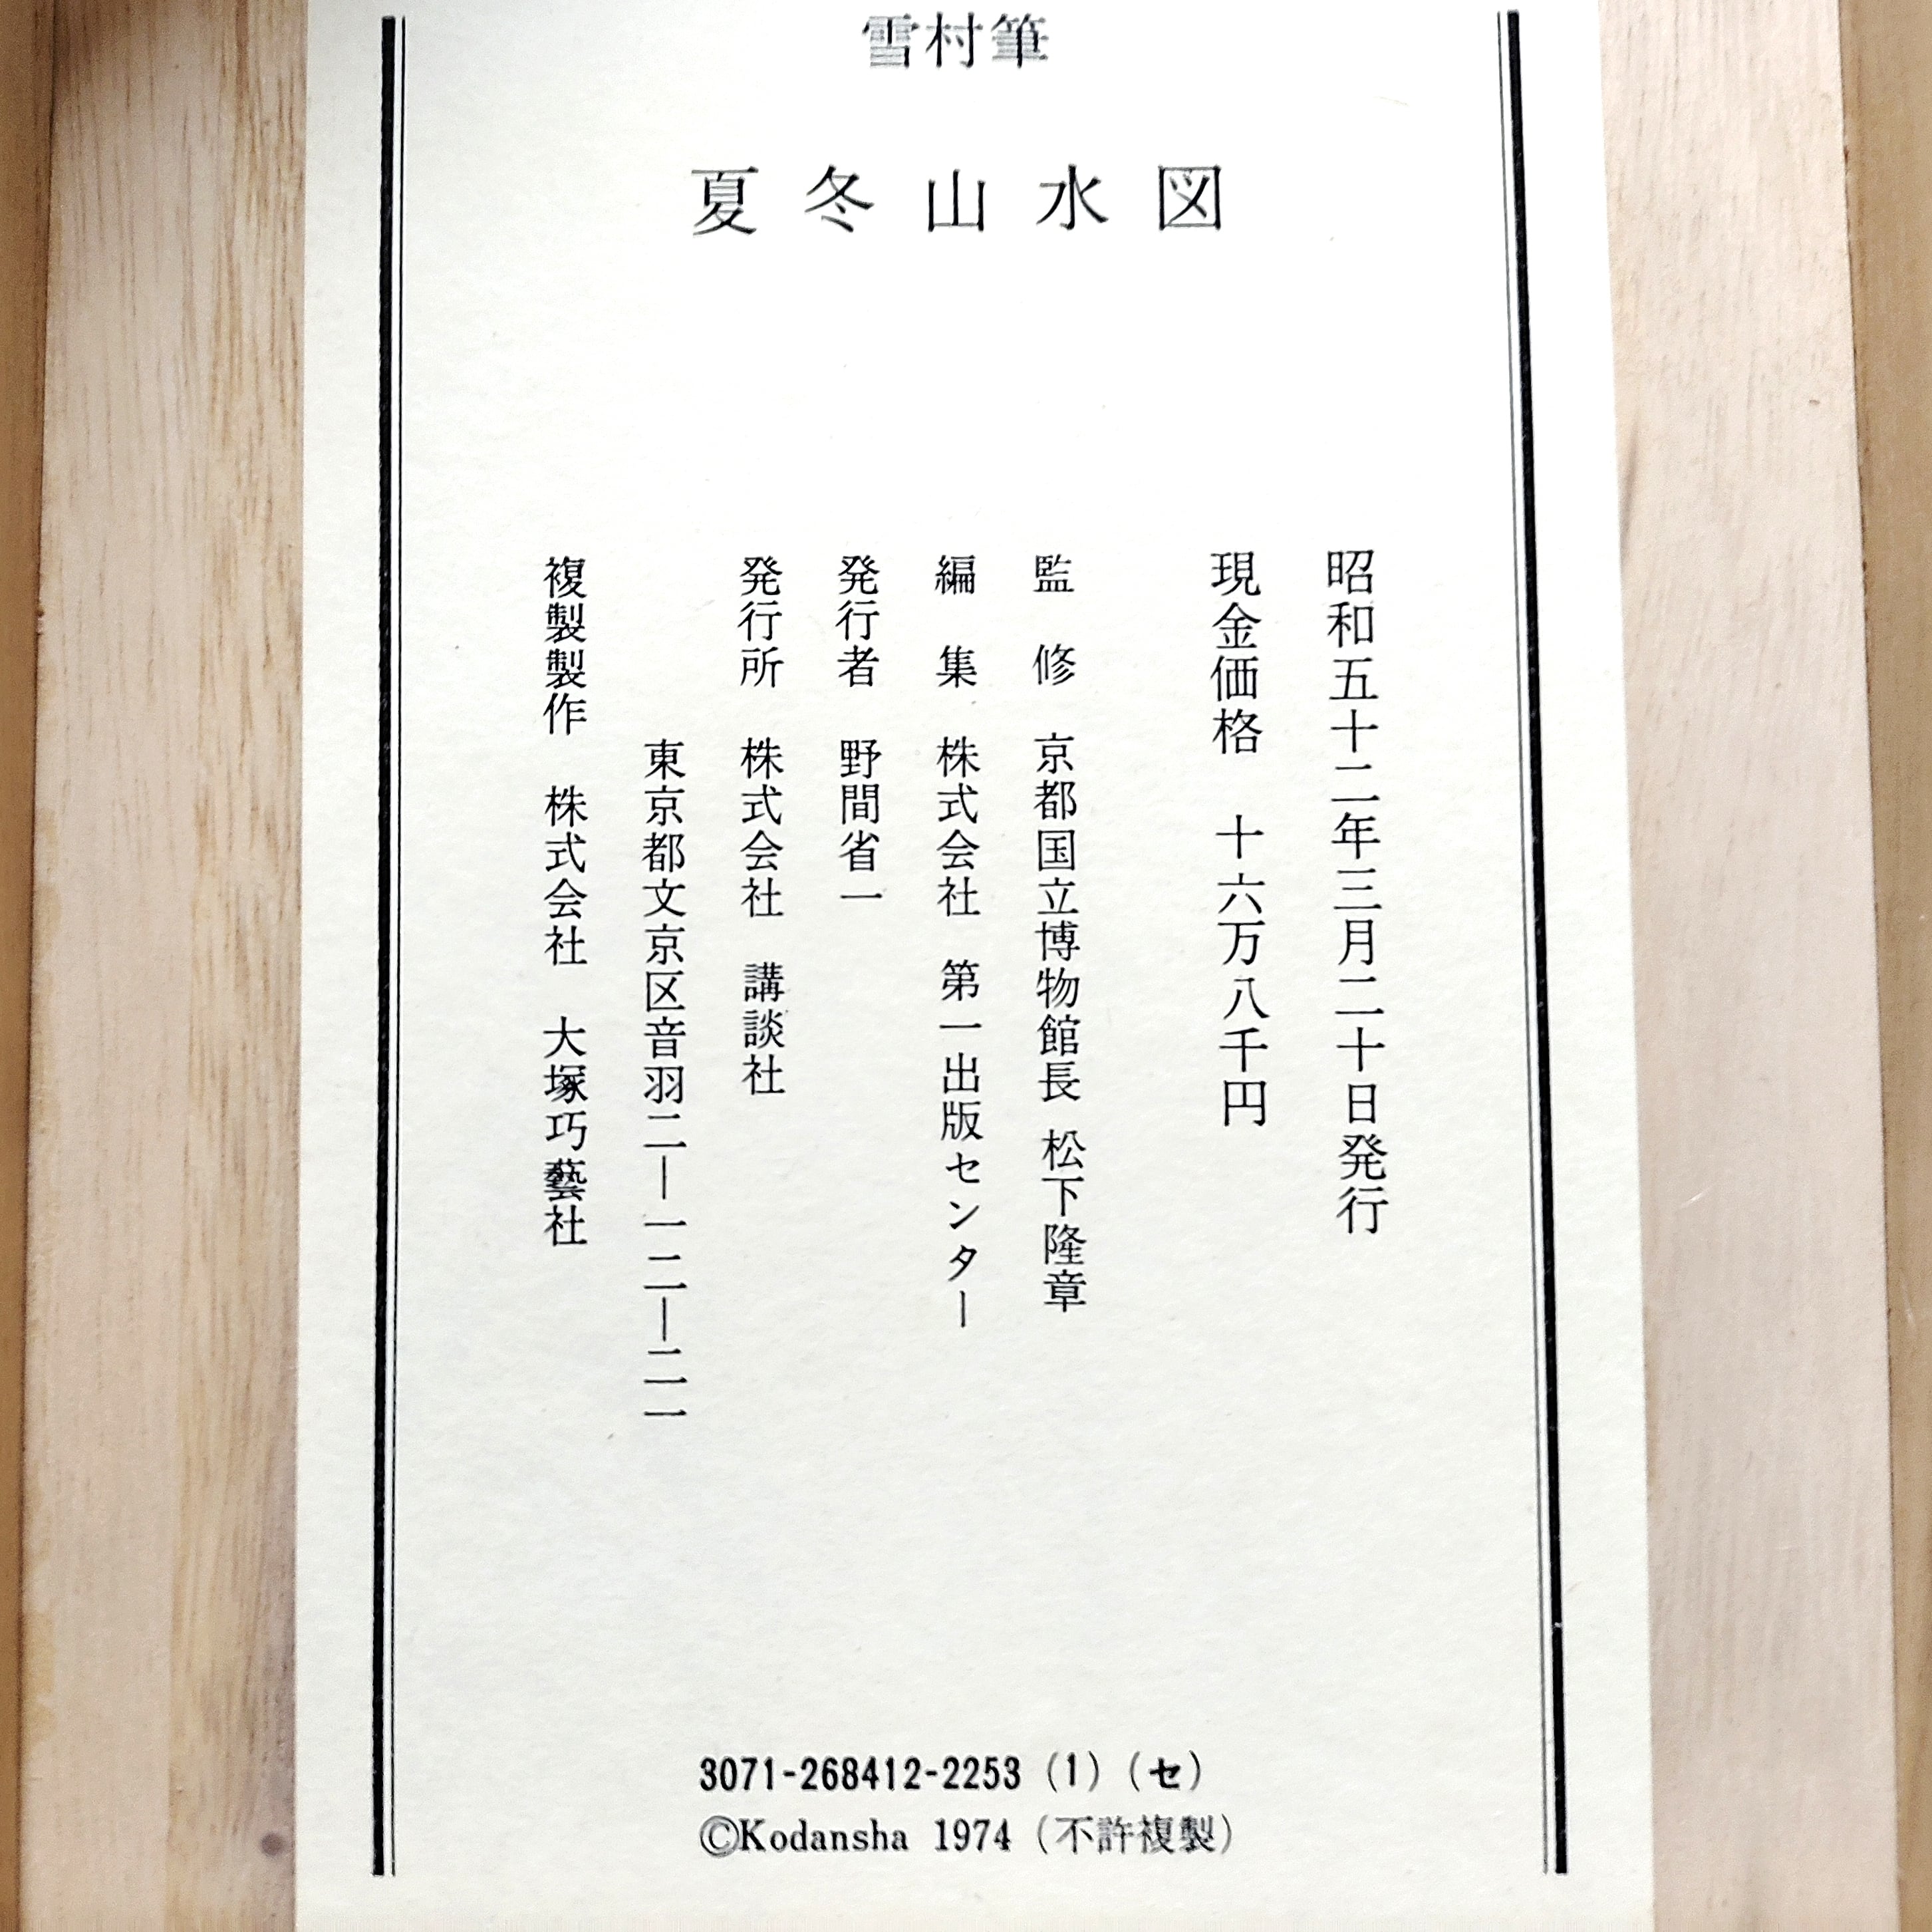 雪村周継・『夏冬山水図』・掛軸・複製・双幅・二本組・No.230511-27